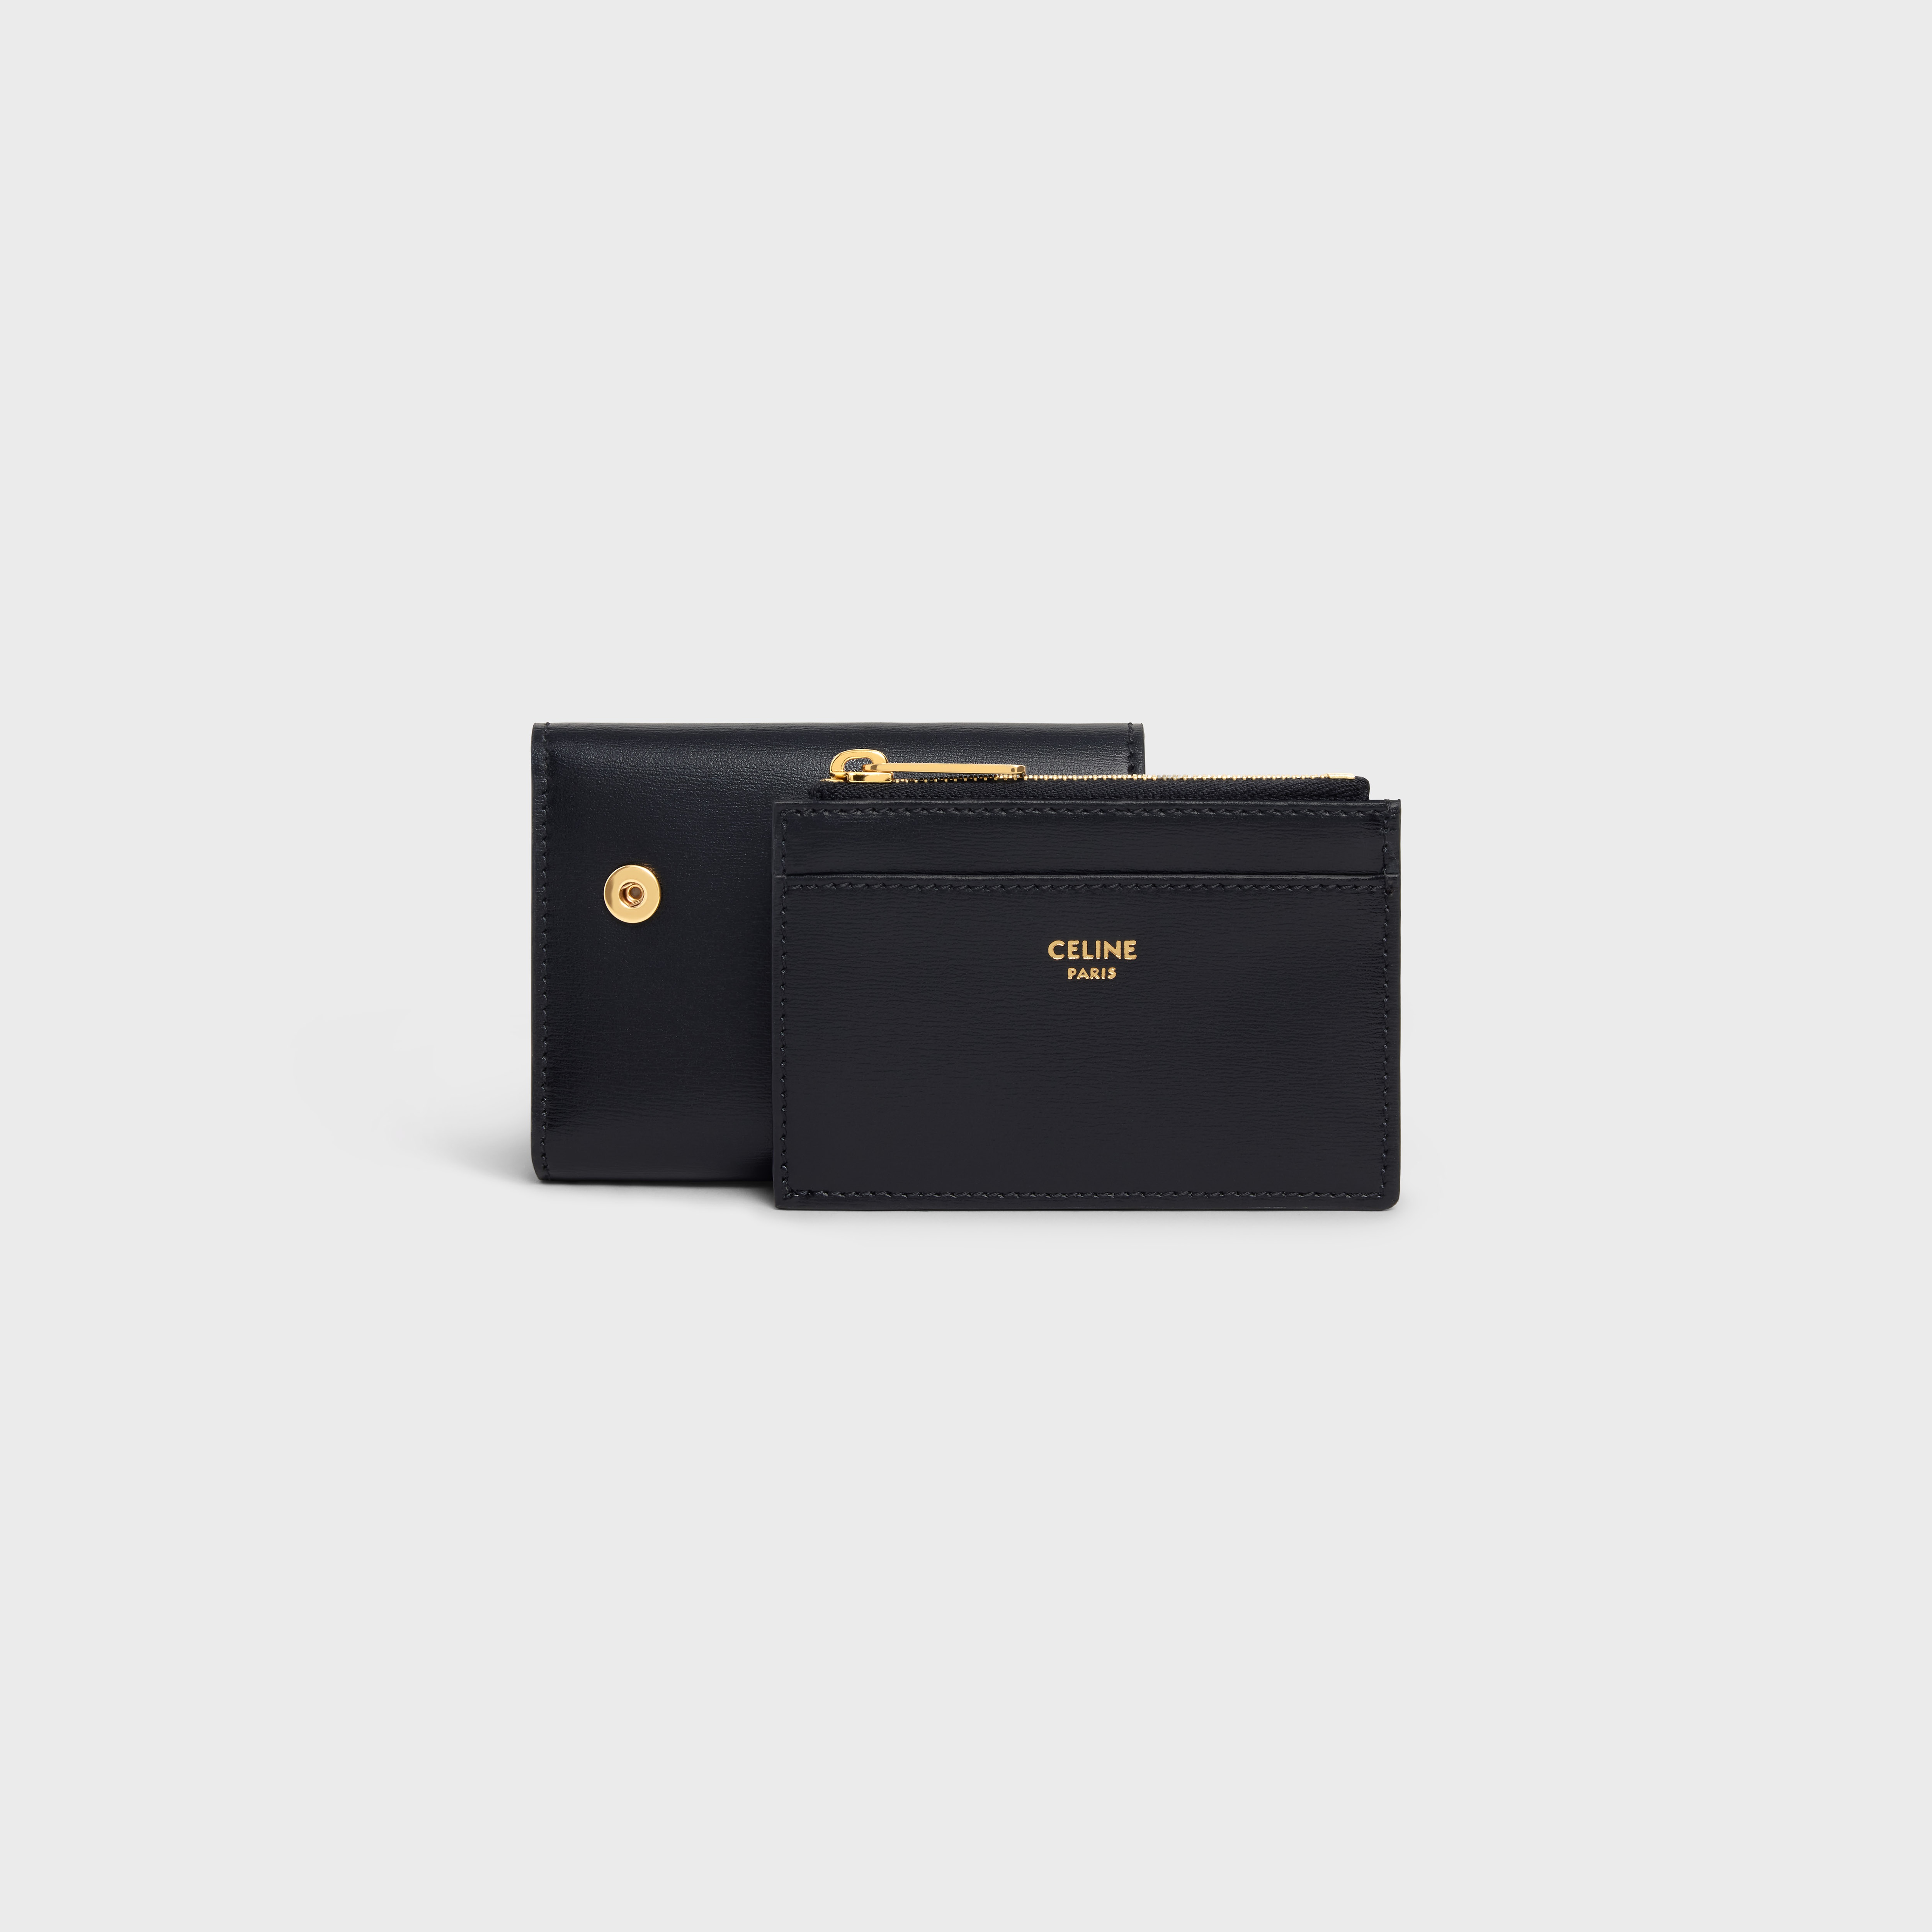 Celine - Triomphe Card Holder in Shiny Calfskin Black for Women - 24S